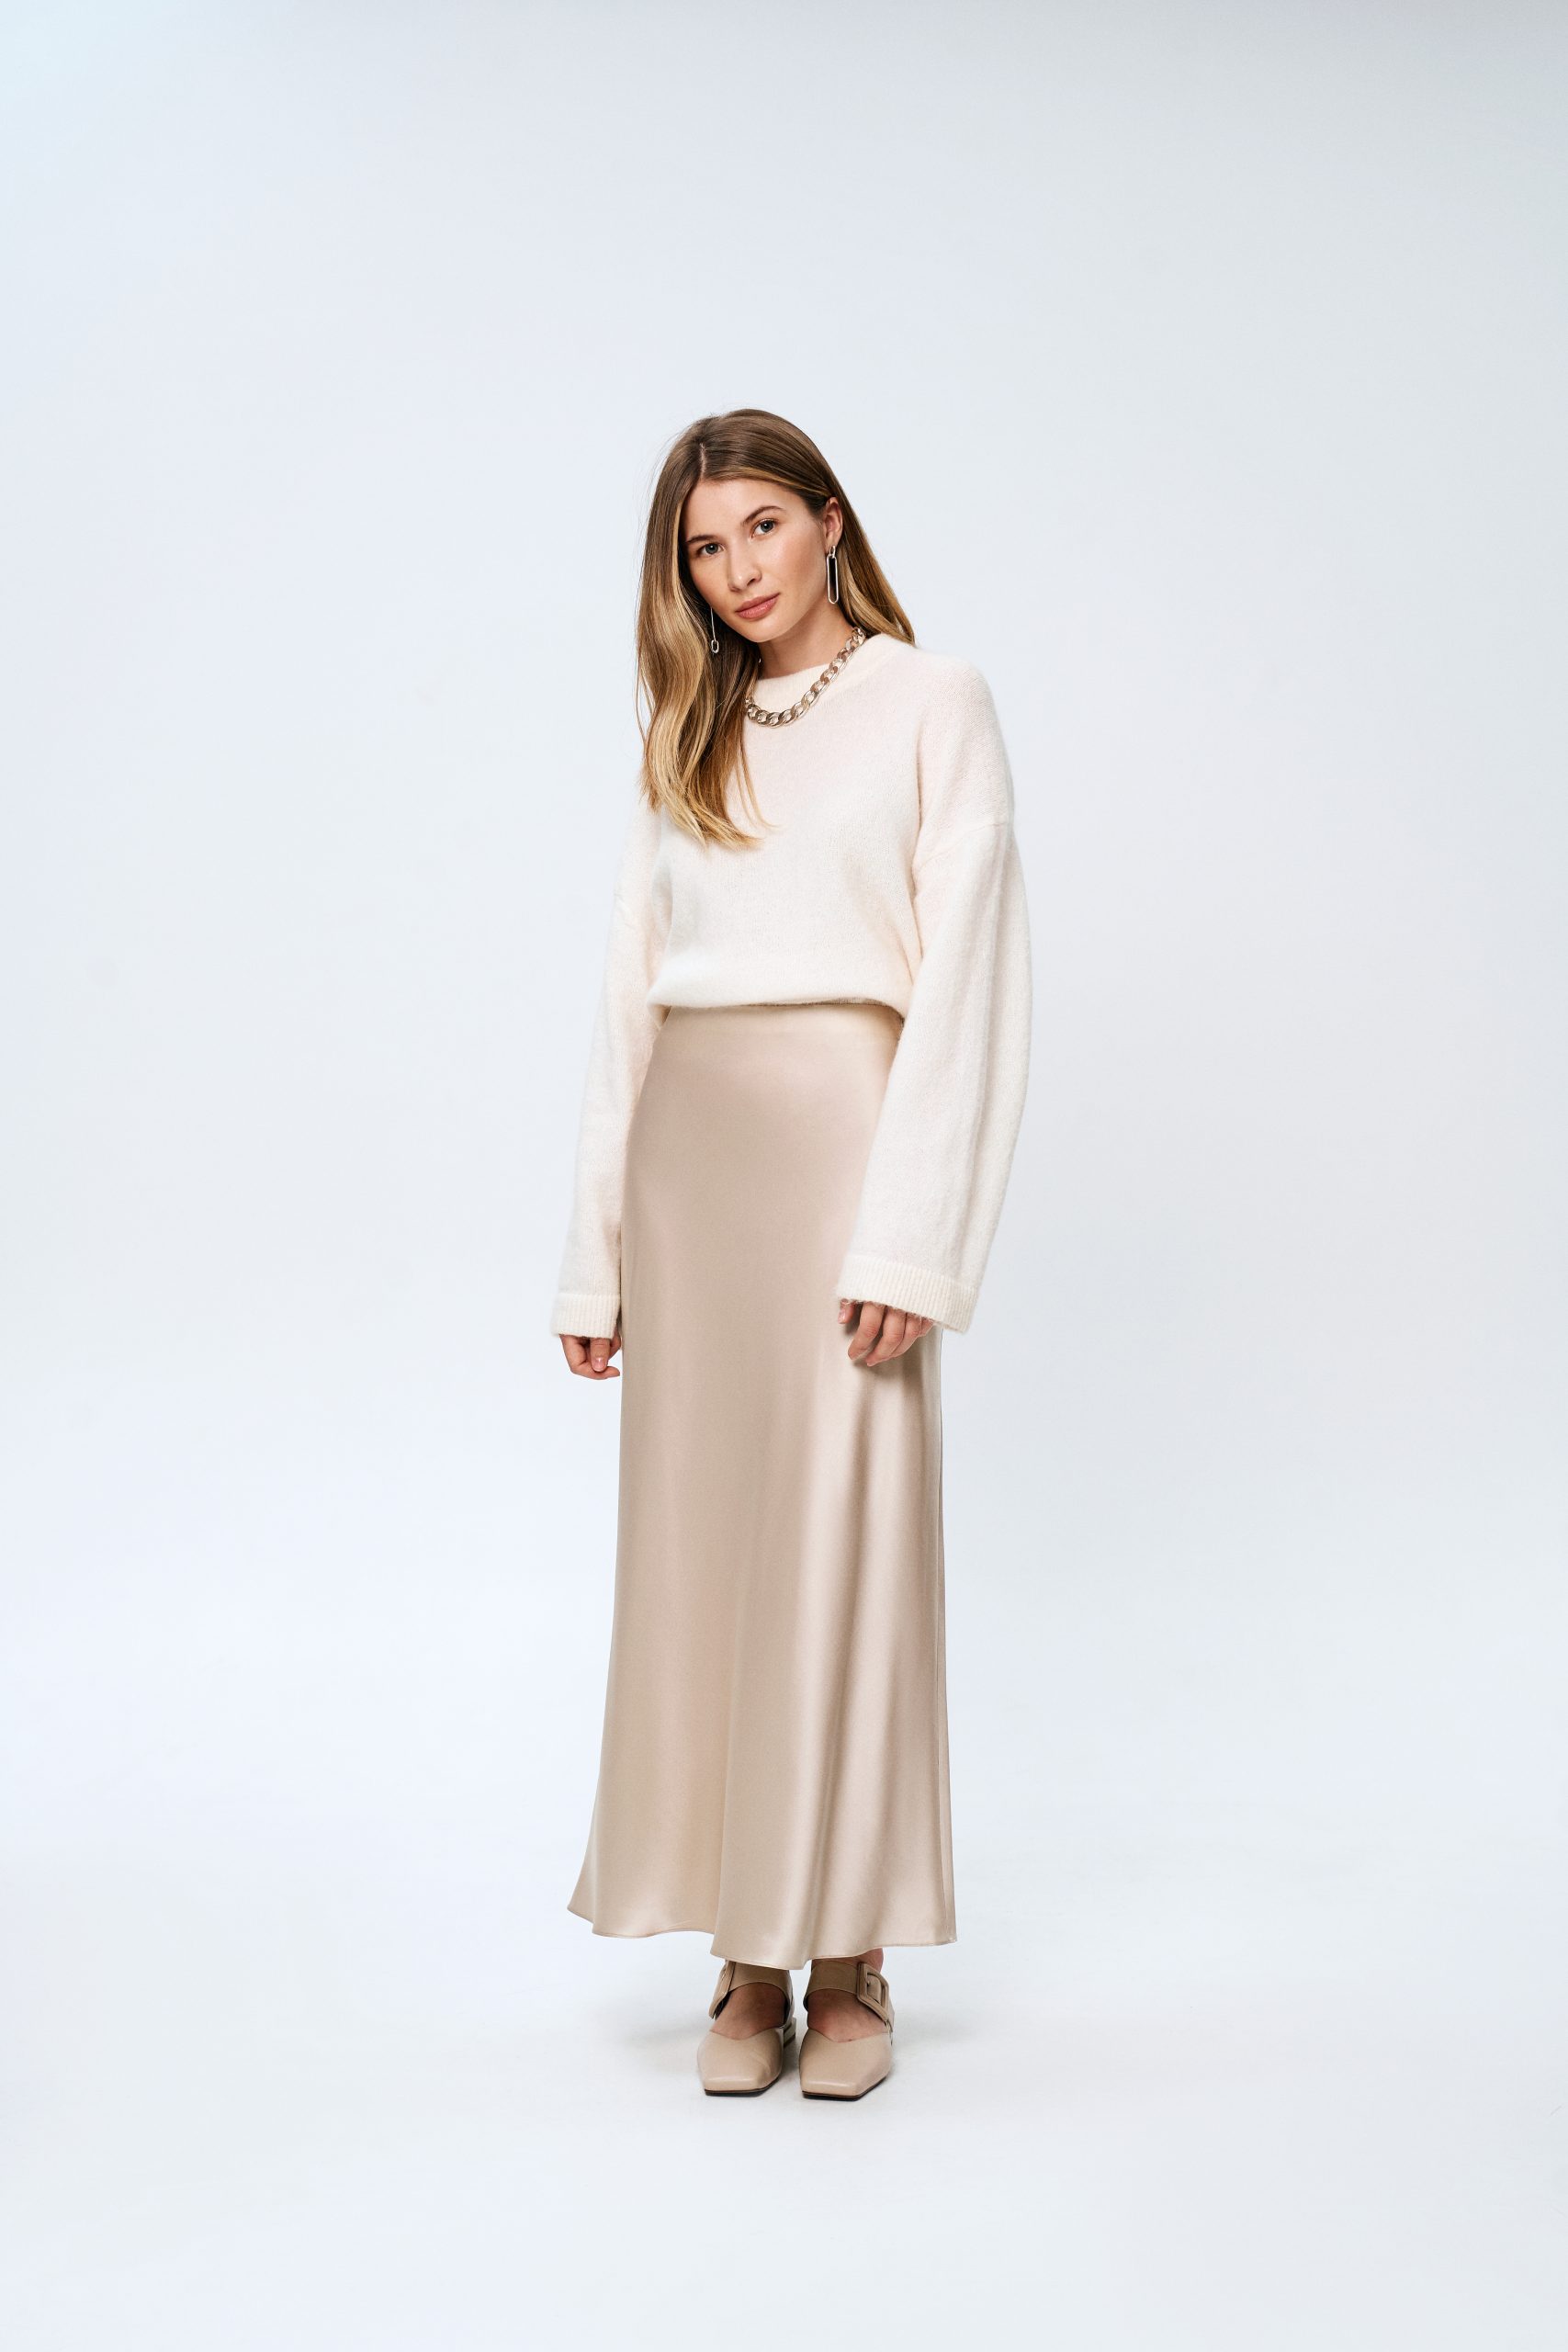 Introducing the Evie Bias Skirt Pattern - Sew Tessuti Blog